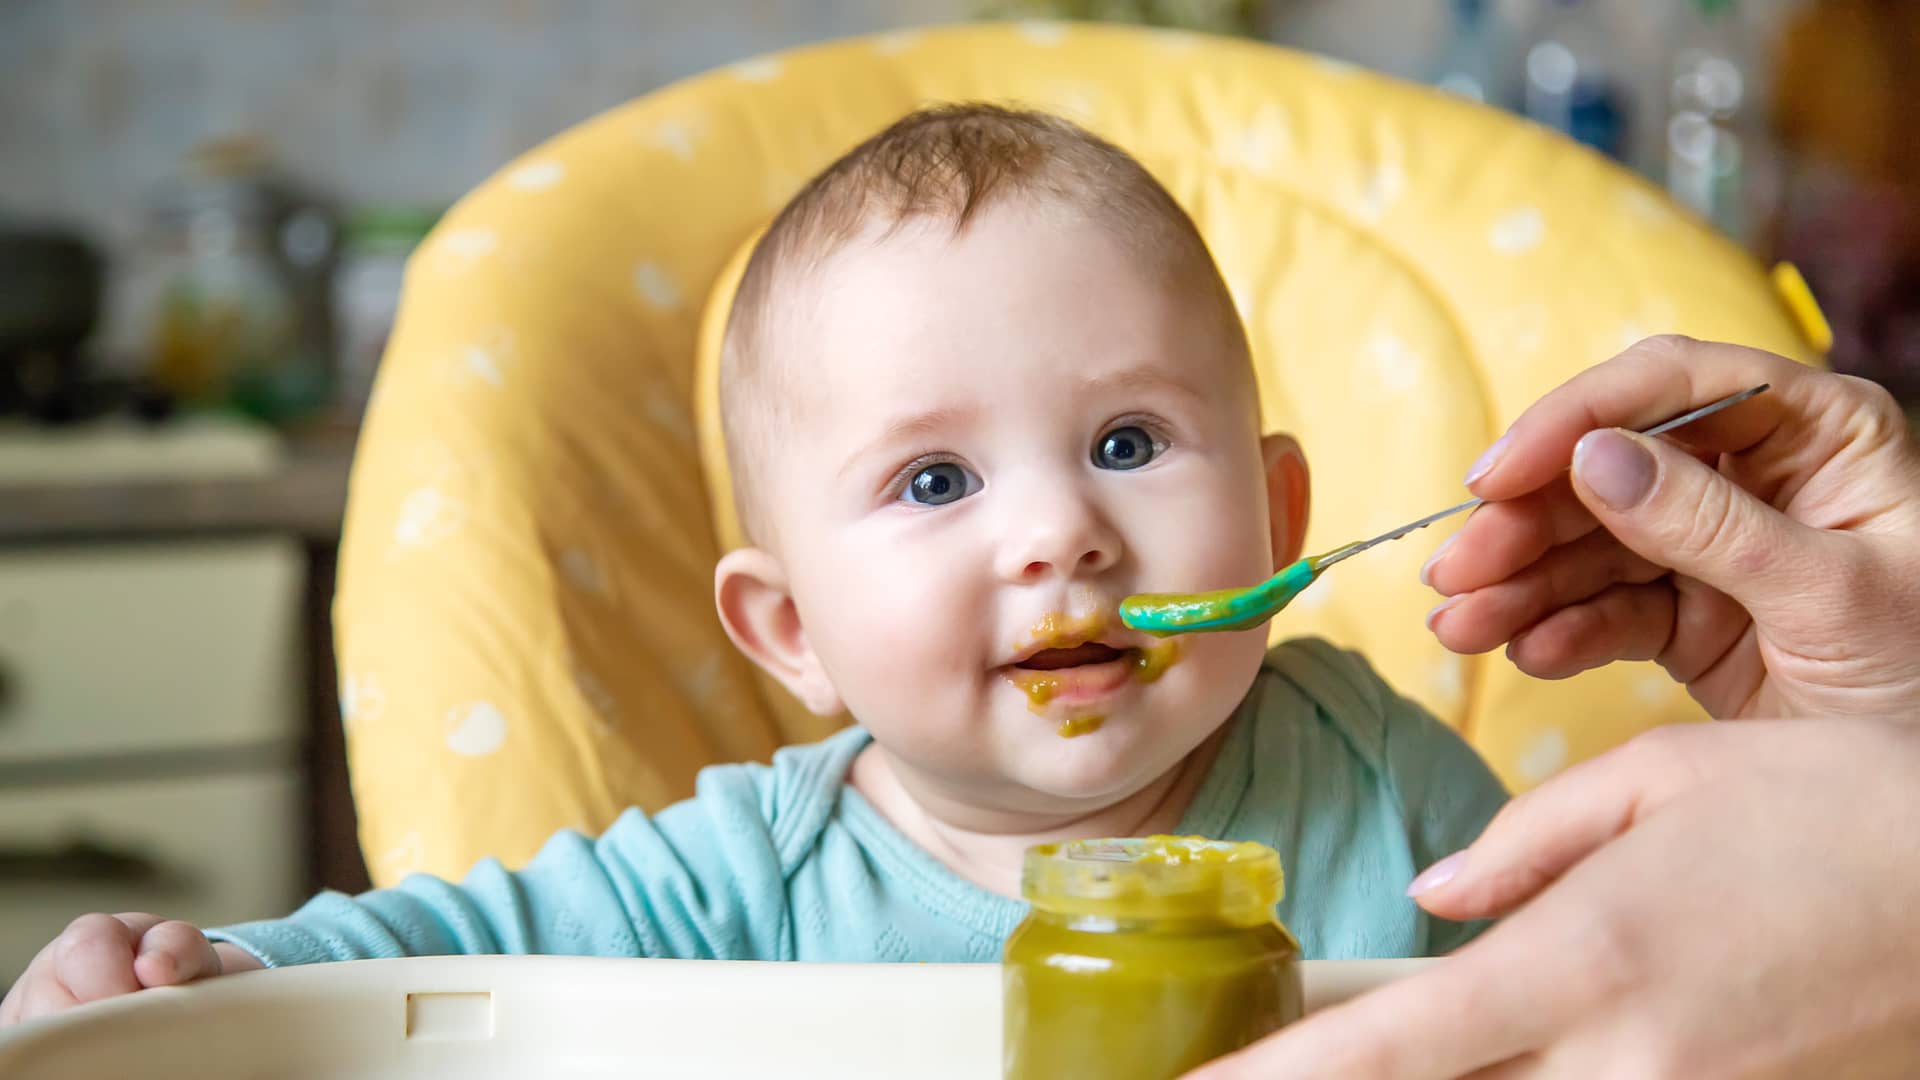 Purés para bebés: ¿cómo le preparo un puré saludable a mi bebé?